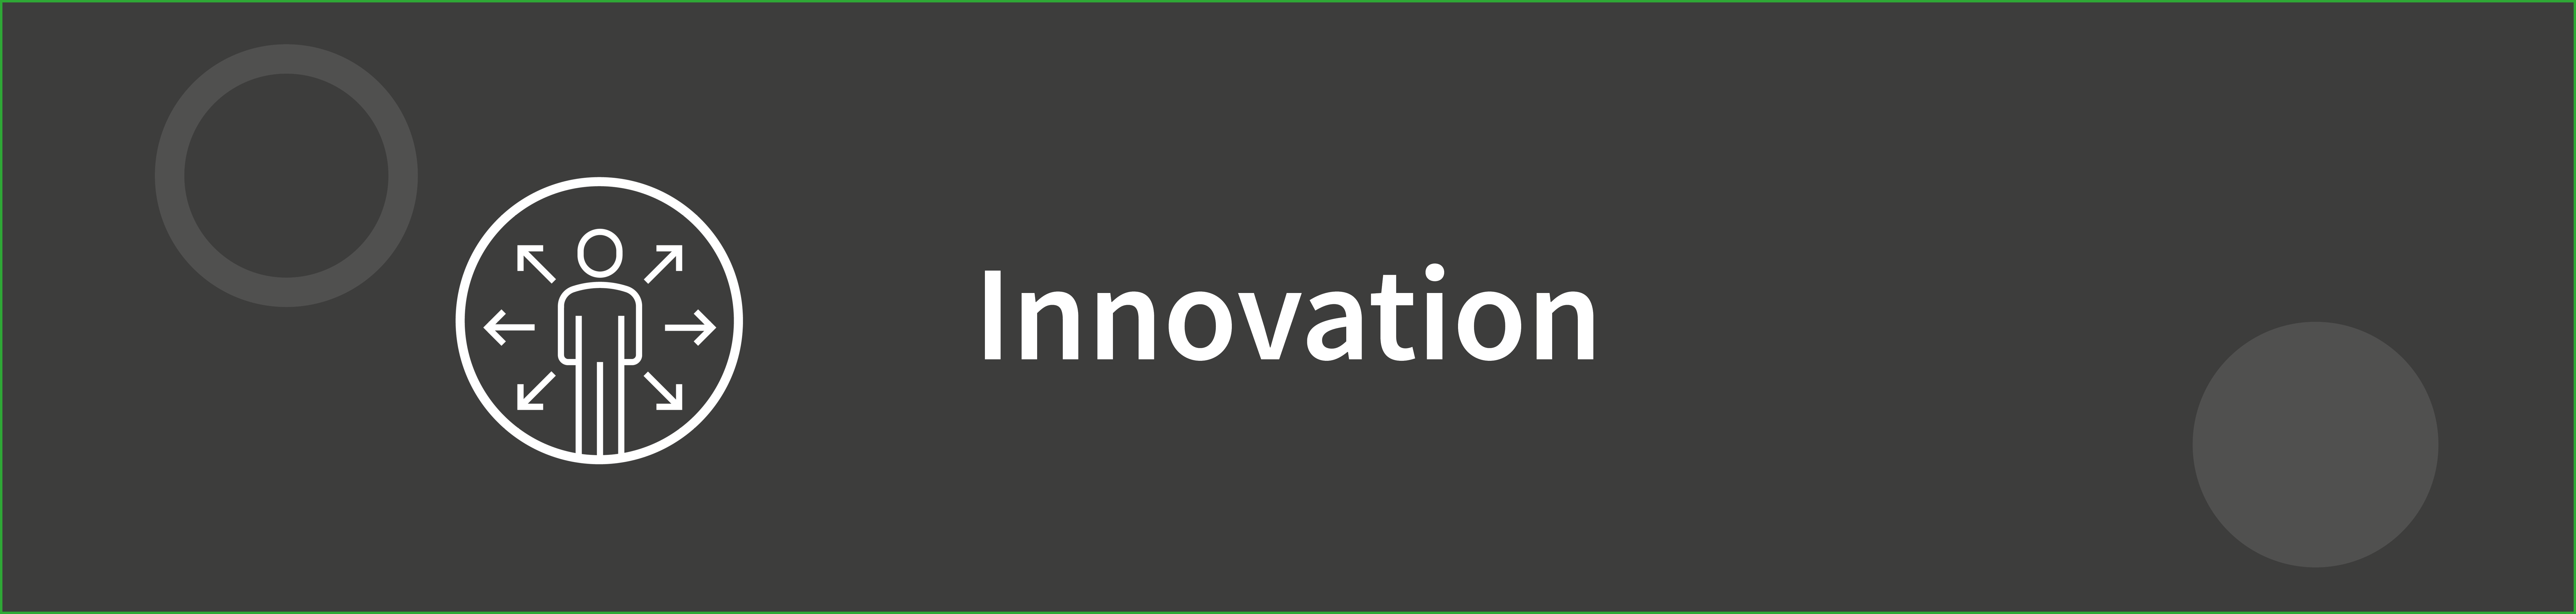 Innovation header